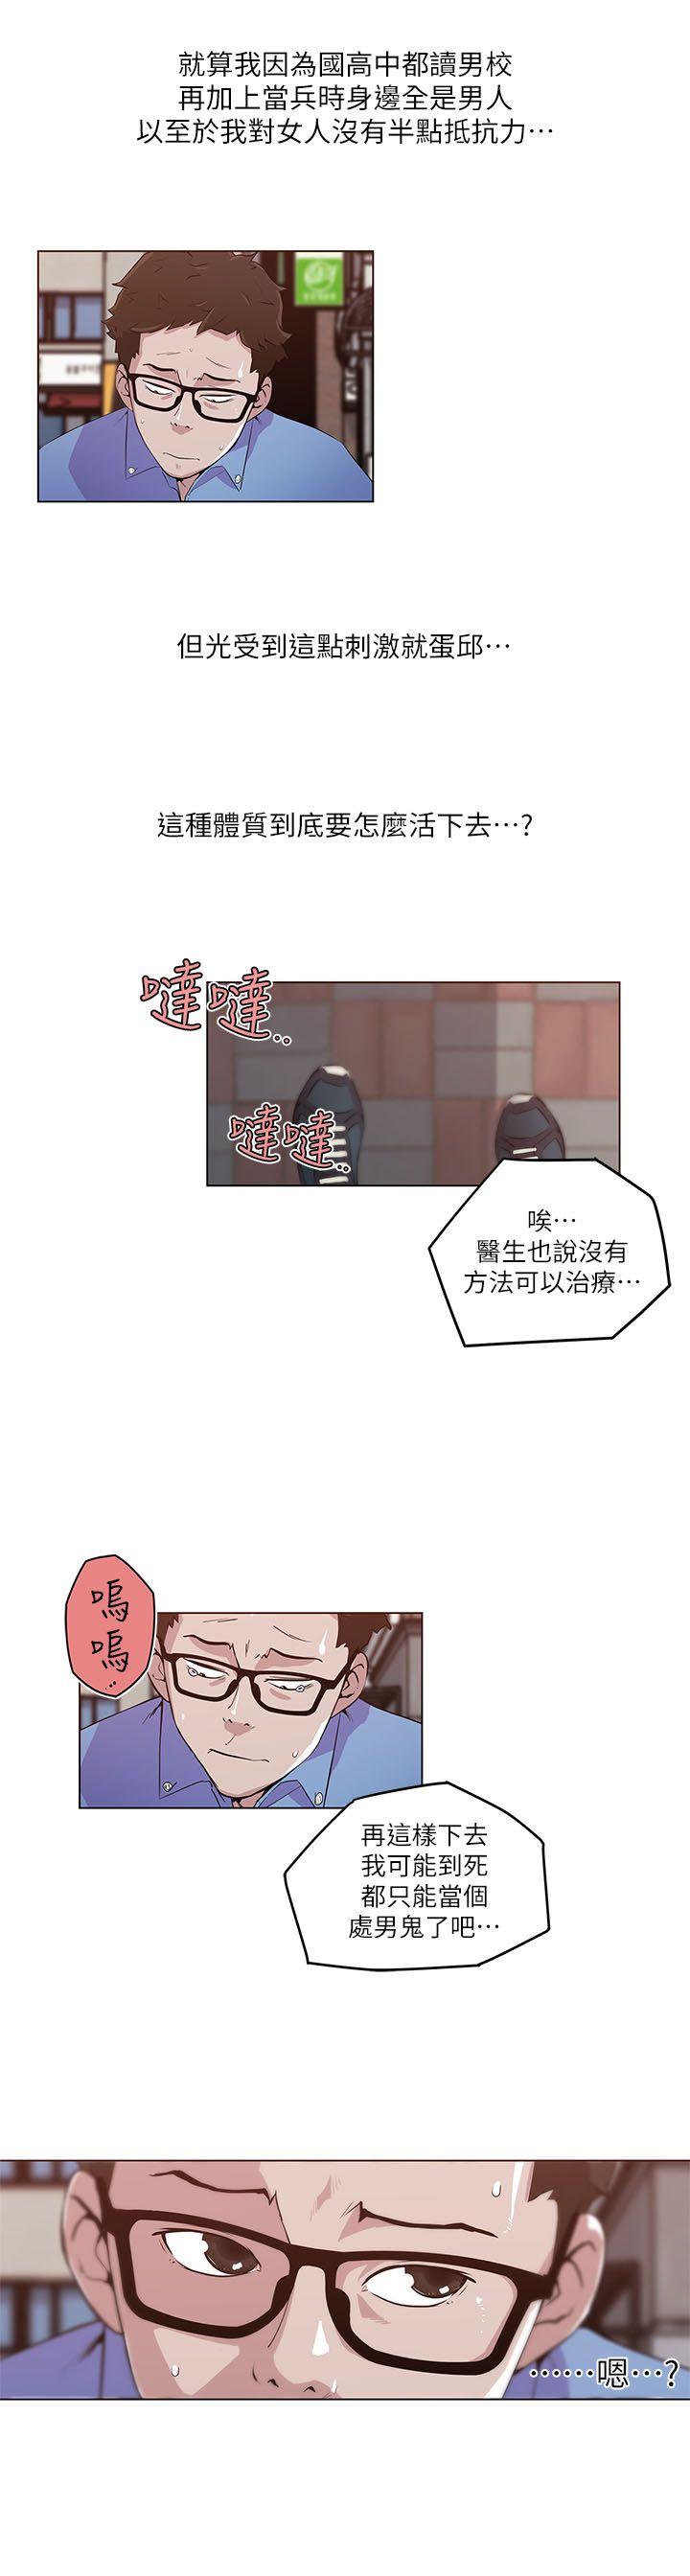 韩国污漫画 打開她的苞 第2话 23